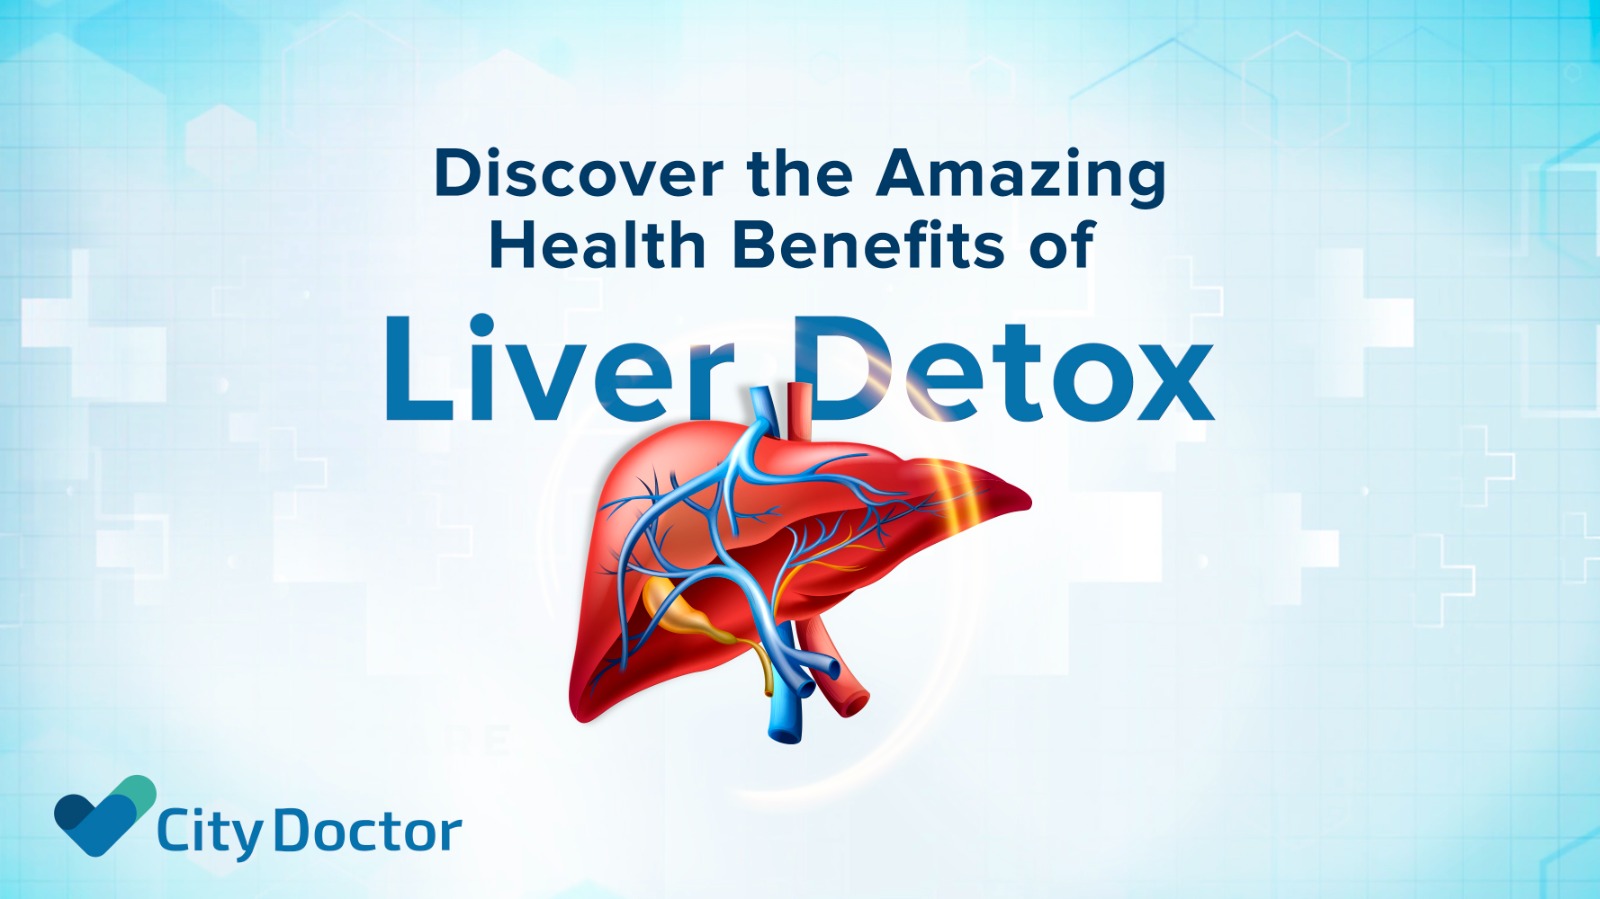 Liver detox benefits